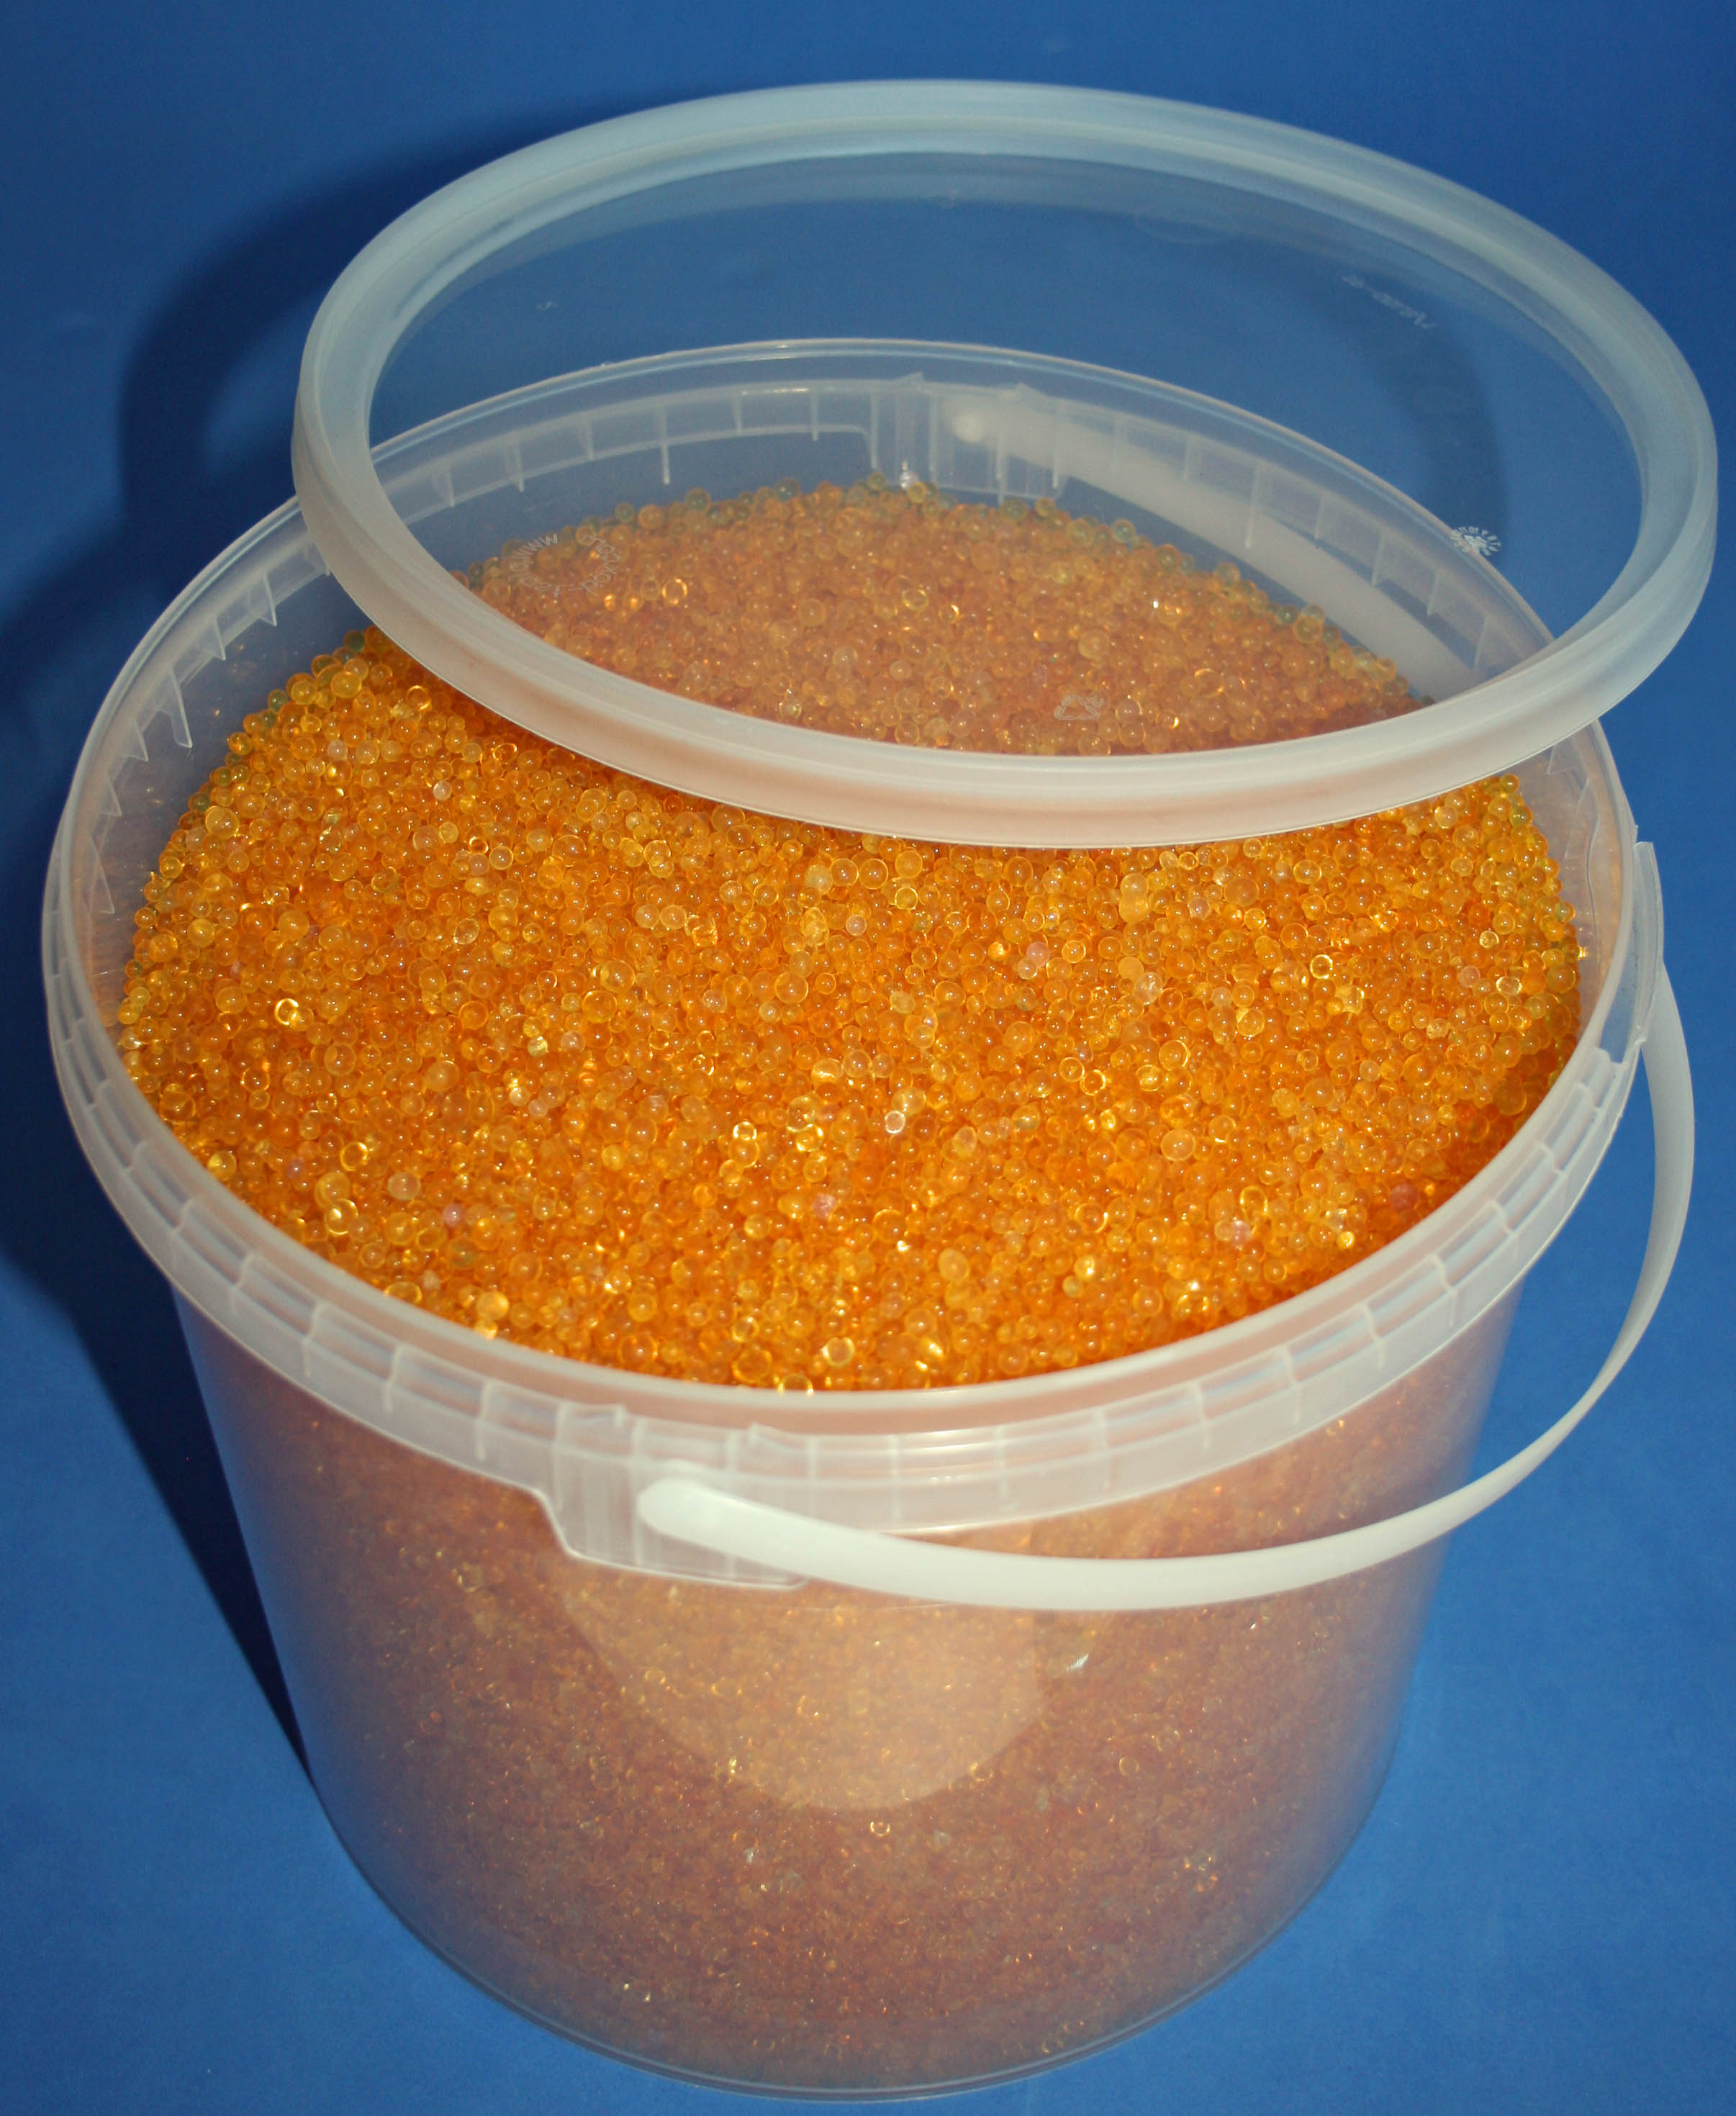 Silica Gel Orange regenerierbar, Trockenmittel mit Indikator